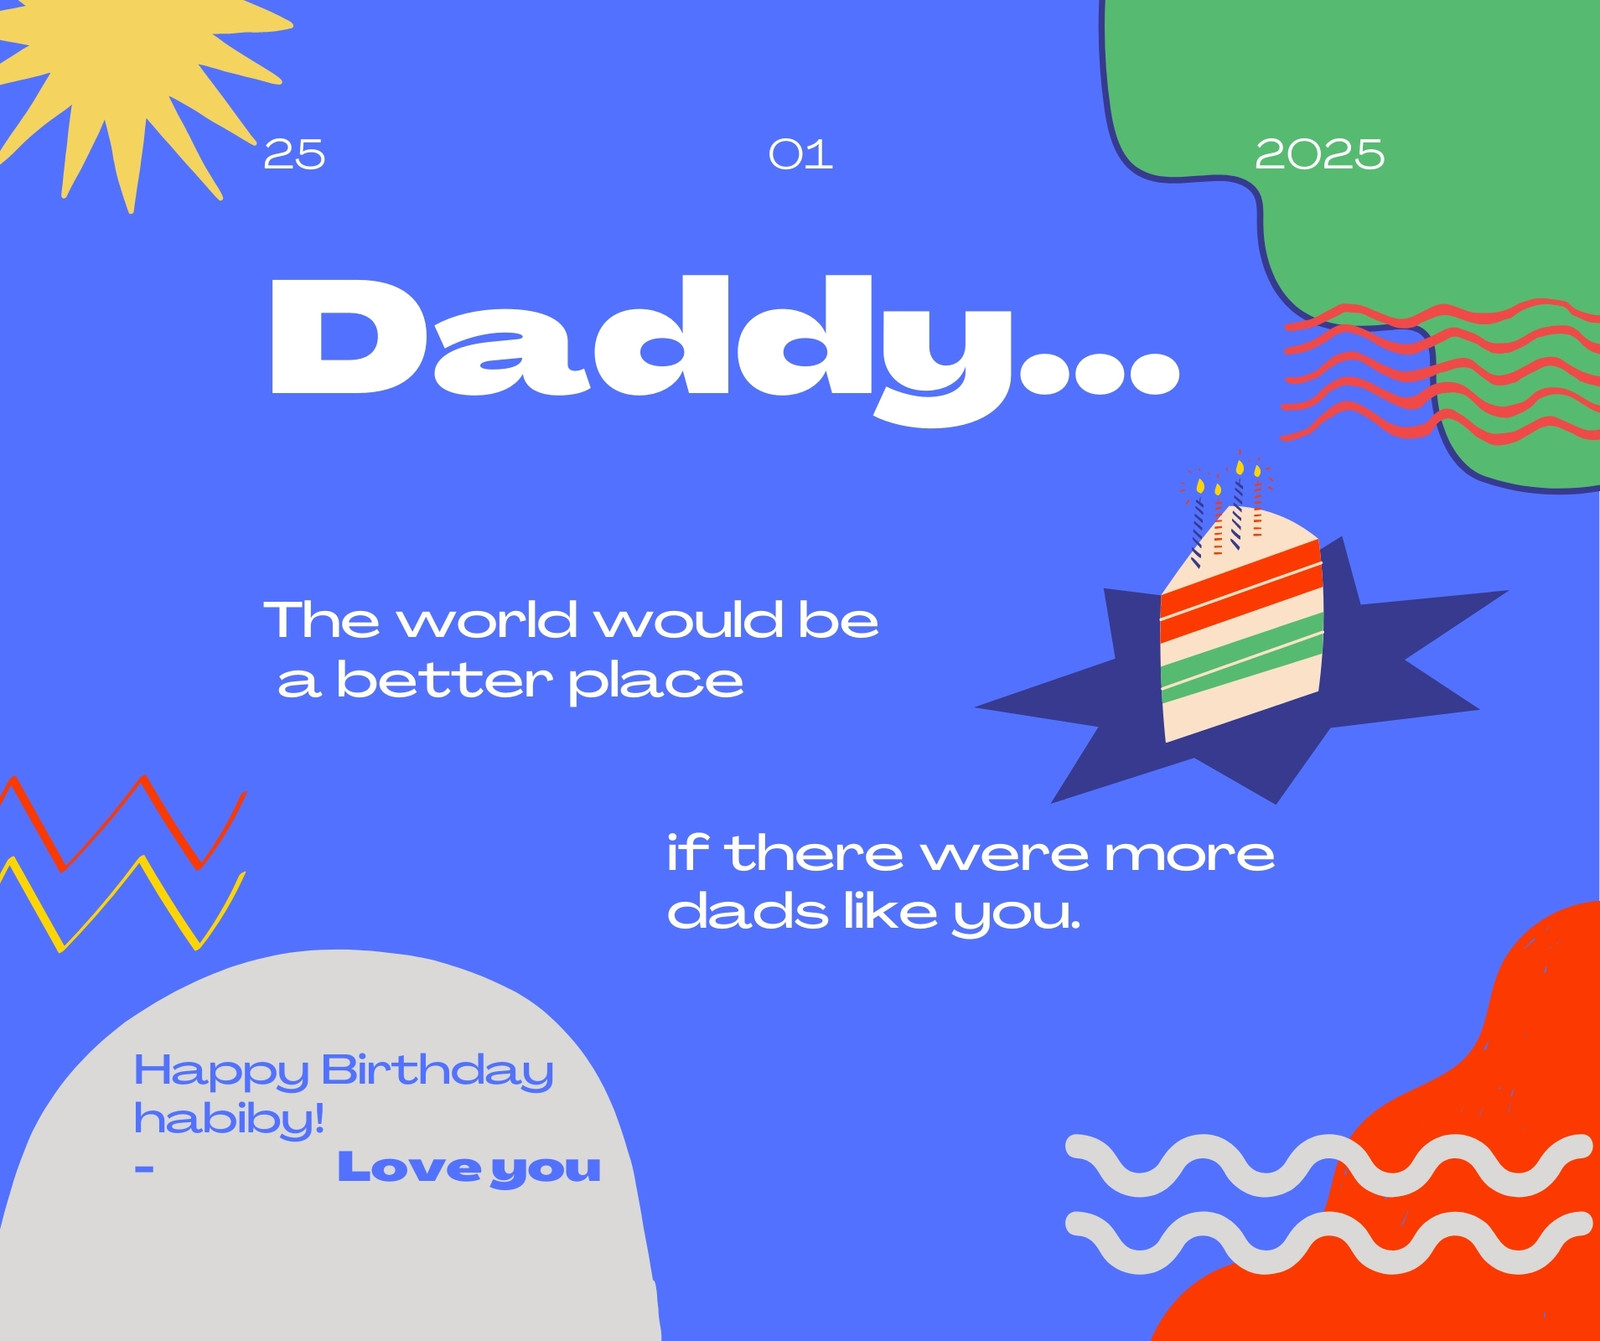 منشور فيسبوك تهنئة عيد ميلاد الأب نابضة بالحياة ملونة